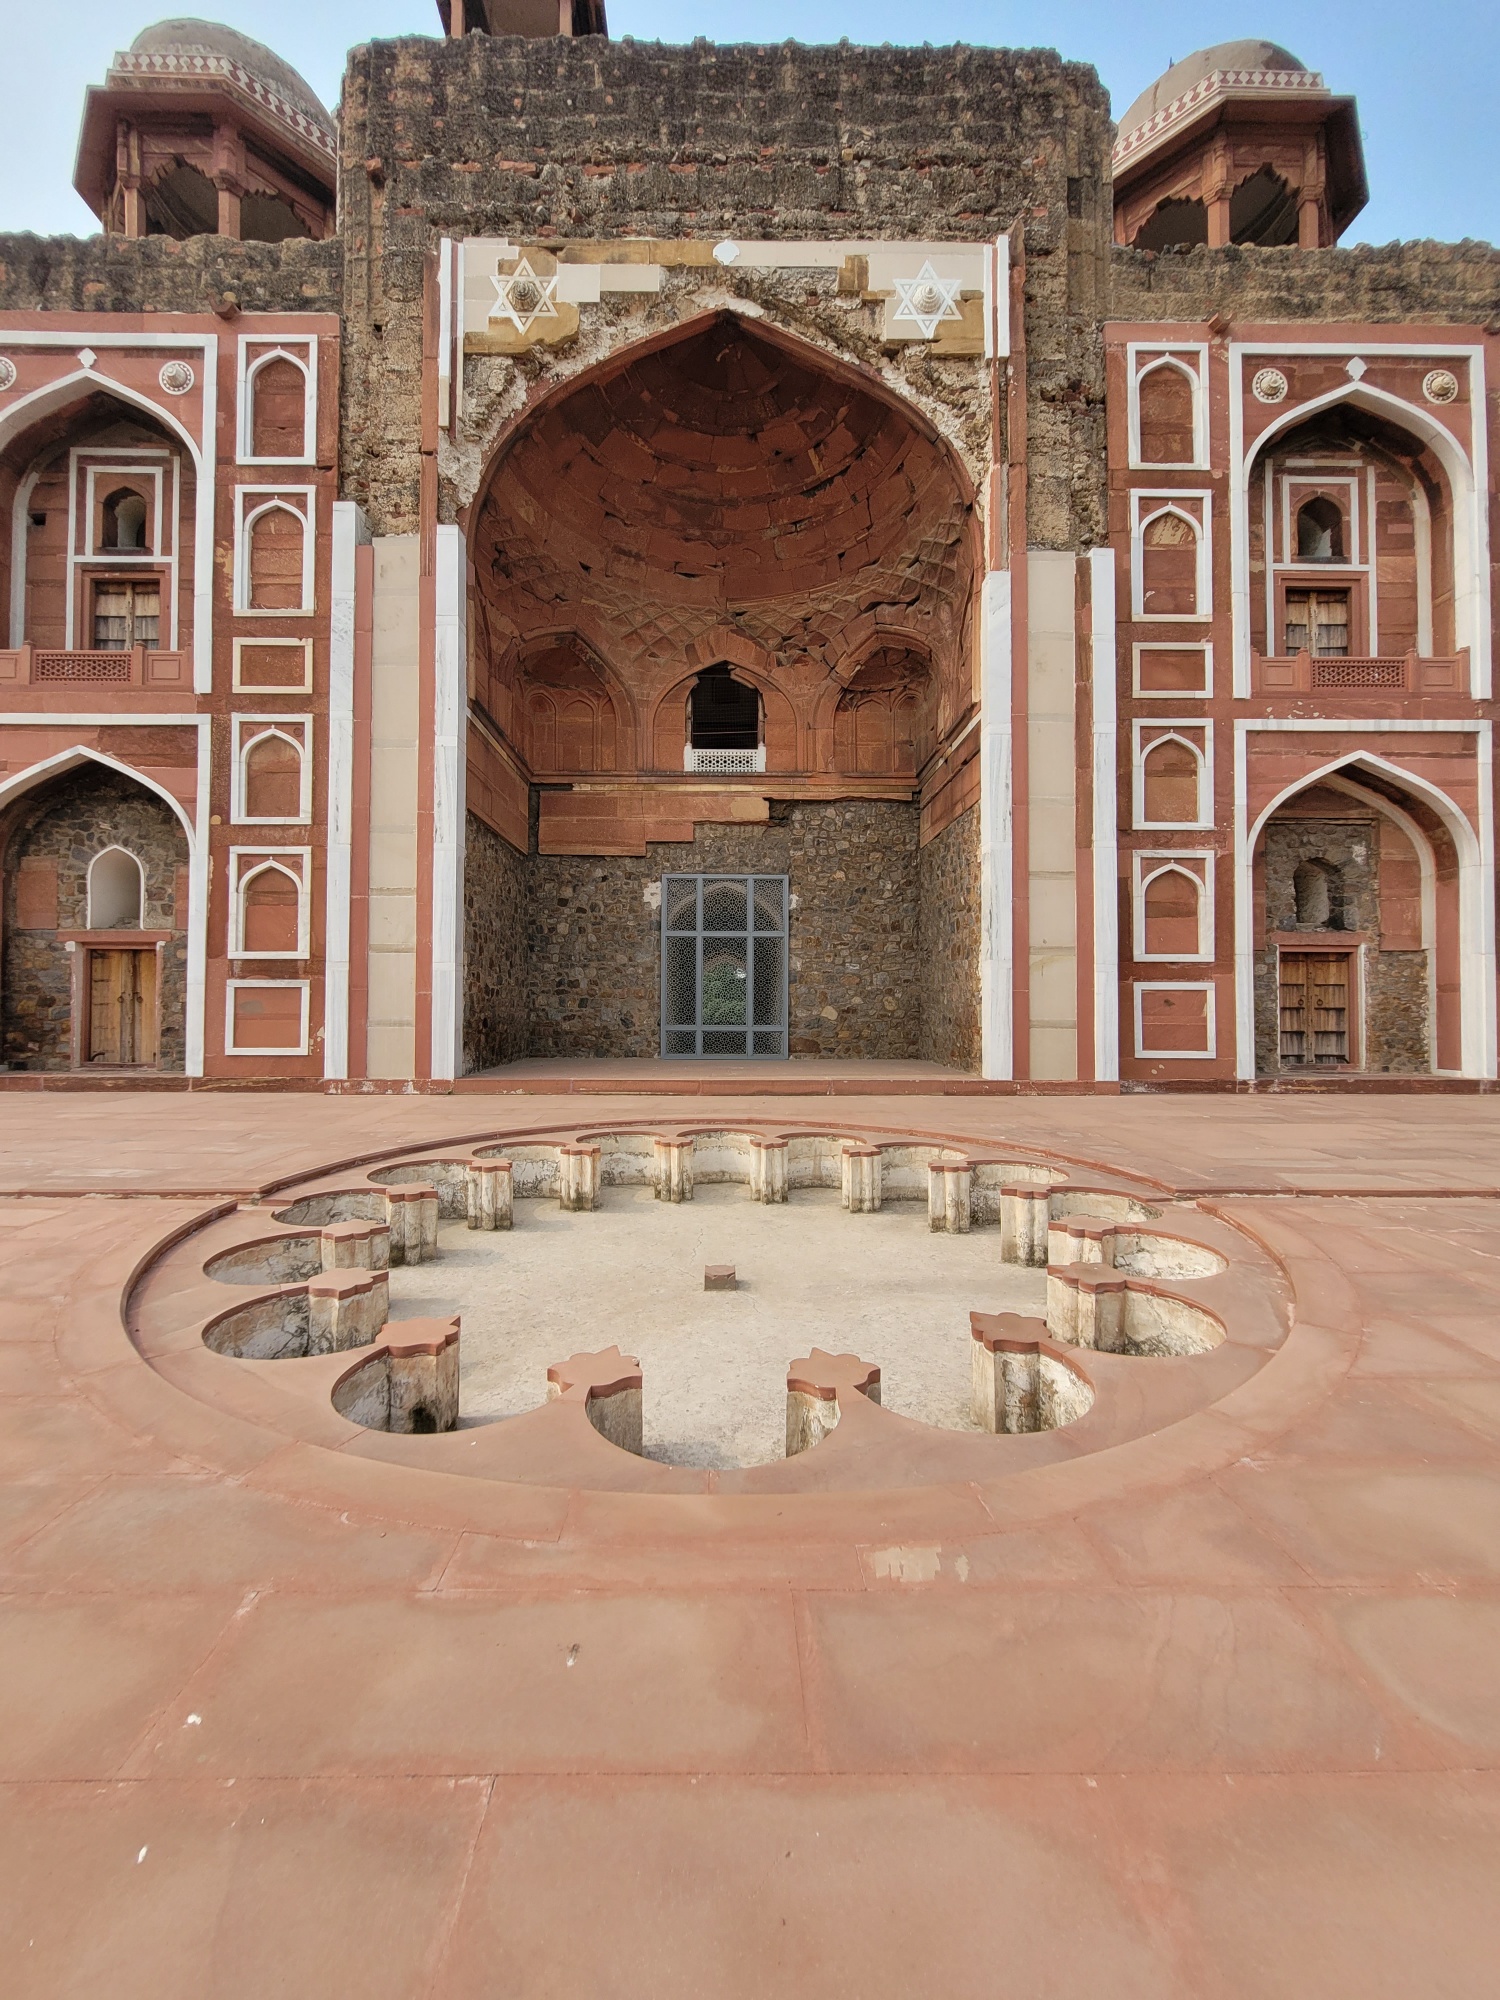 Abdur Rahim Khan-i-Khanan’s Mausoleum Conservation